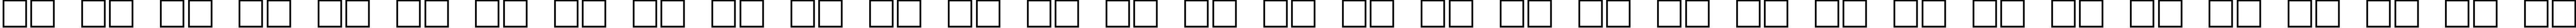 Пример написания русского алфавита шрифтом Lincoln Chain